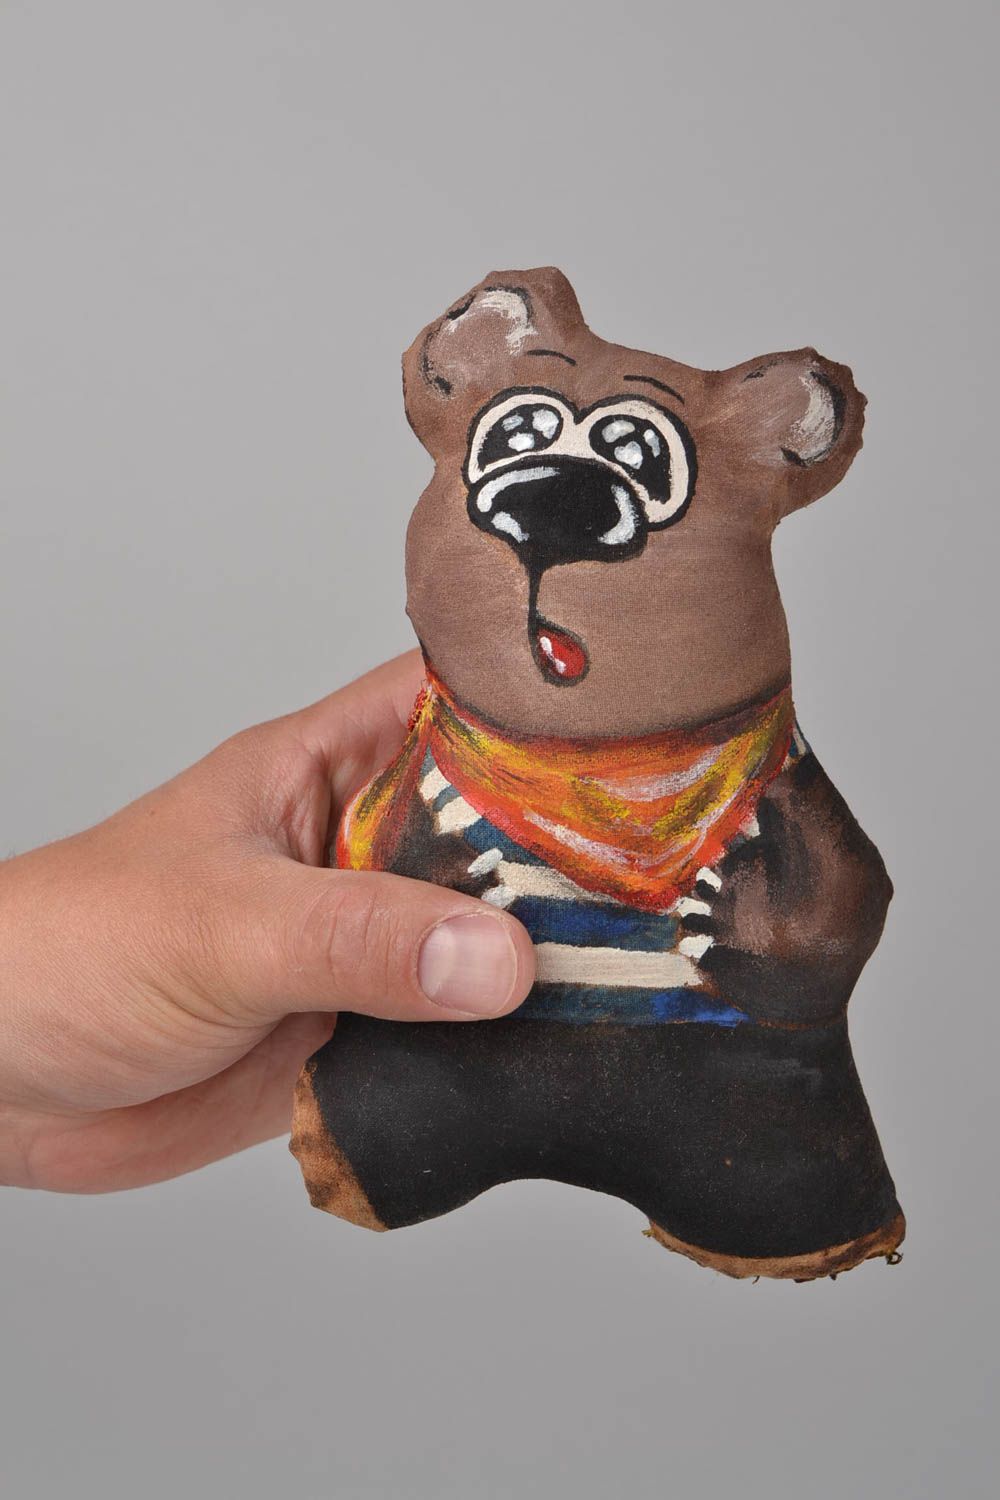 Расписная игрушка ручной работы с ароматом из льна оригинальная Медвежонок фото 2